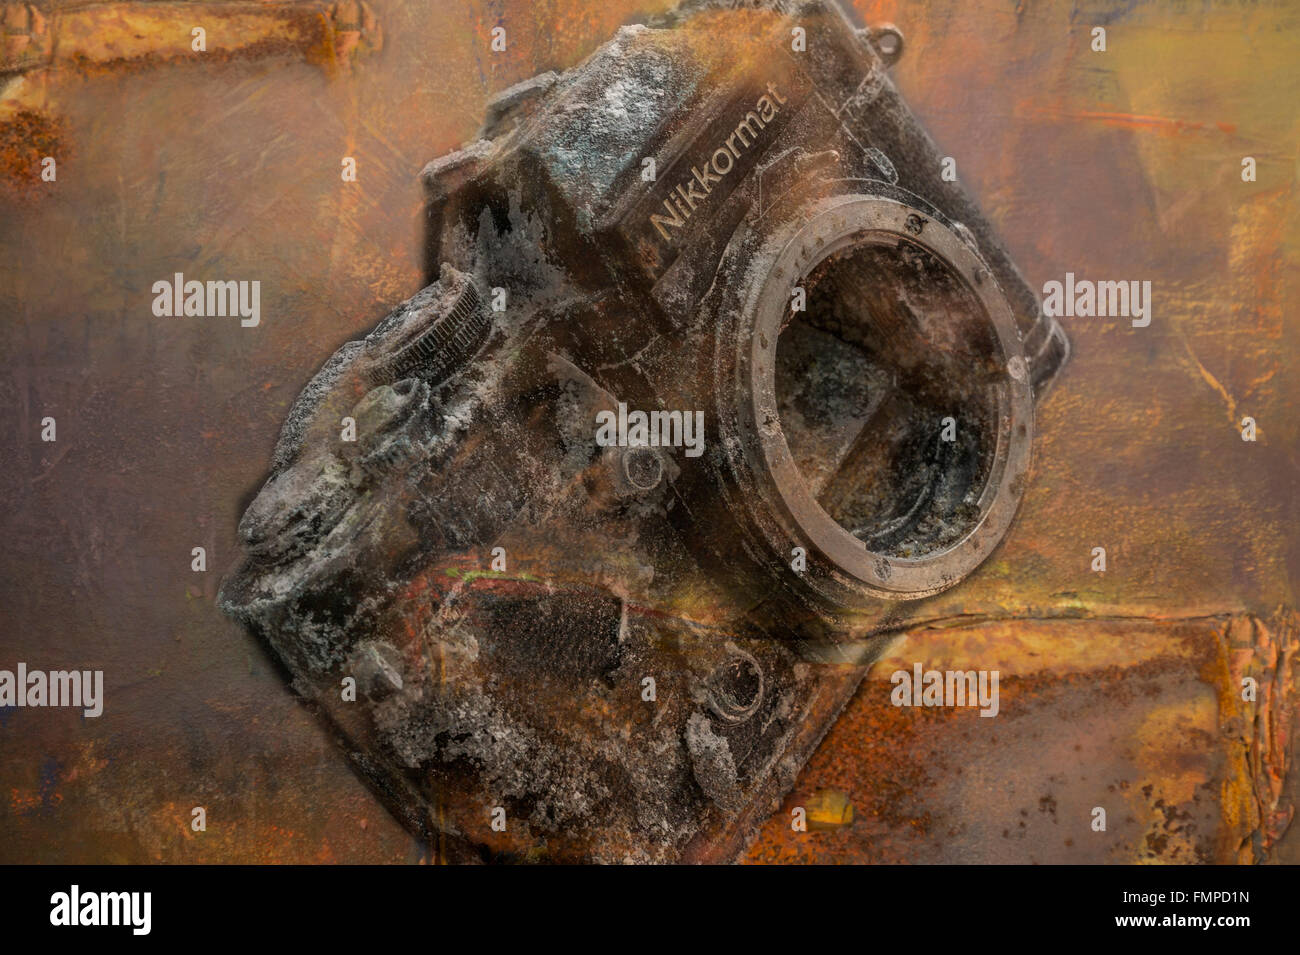 Vecchio arrugginito reflex analogiche fotocamera, immagine simbolica di una tecnologia ormai superata Foto Stock